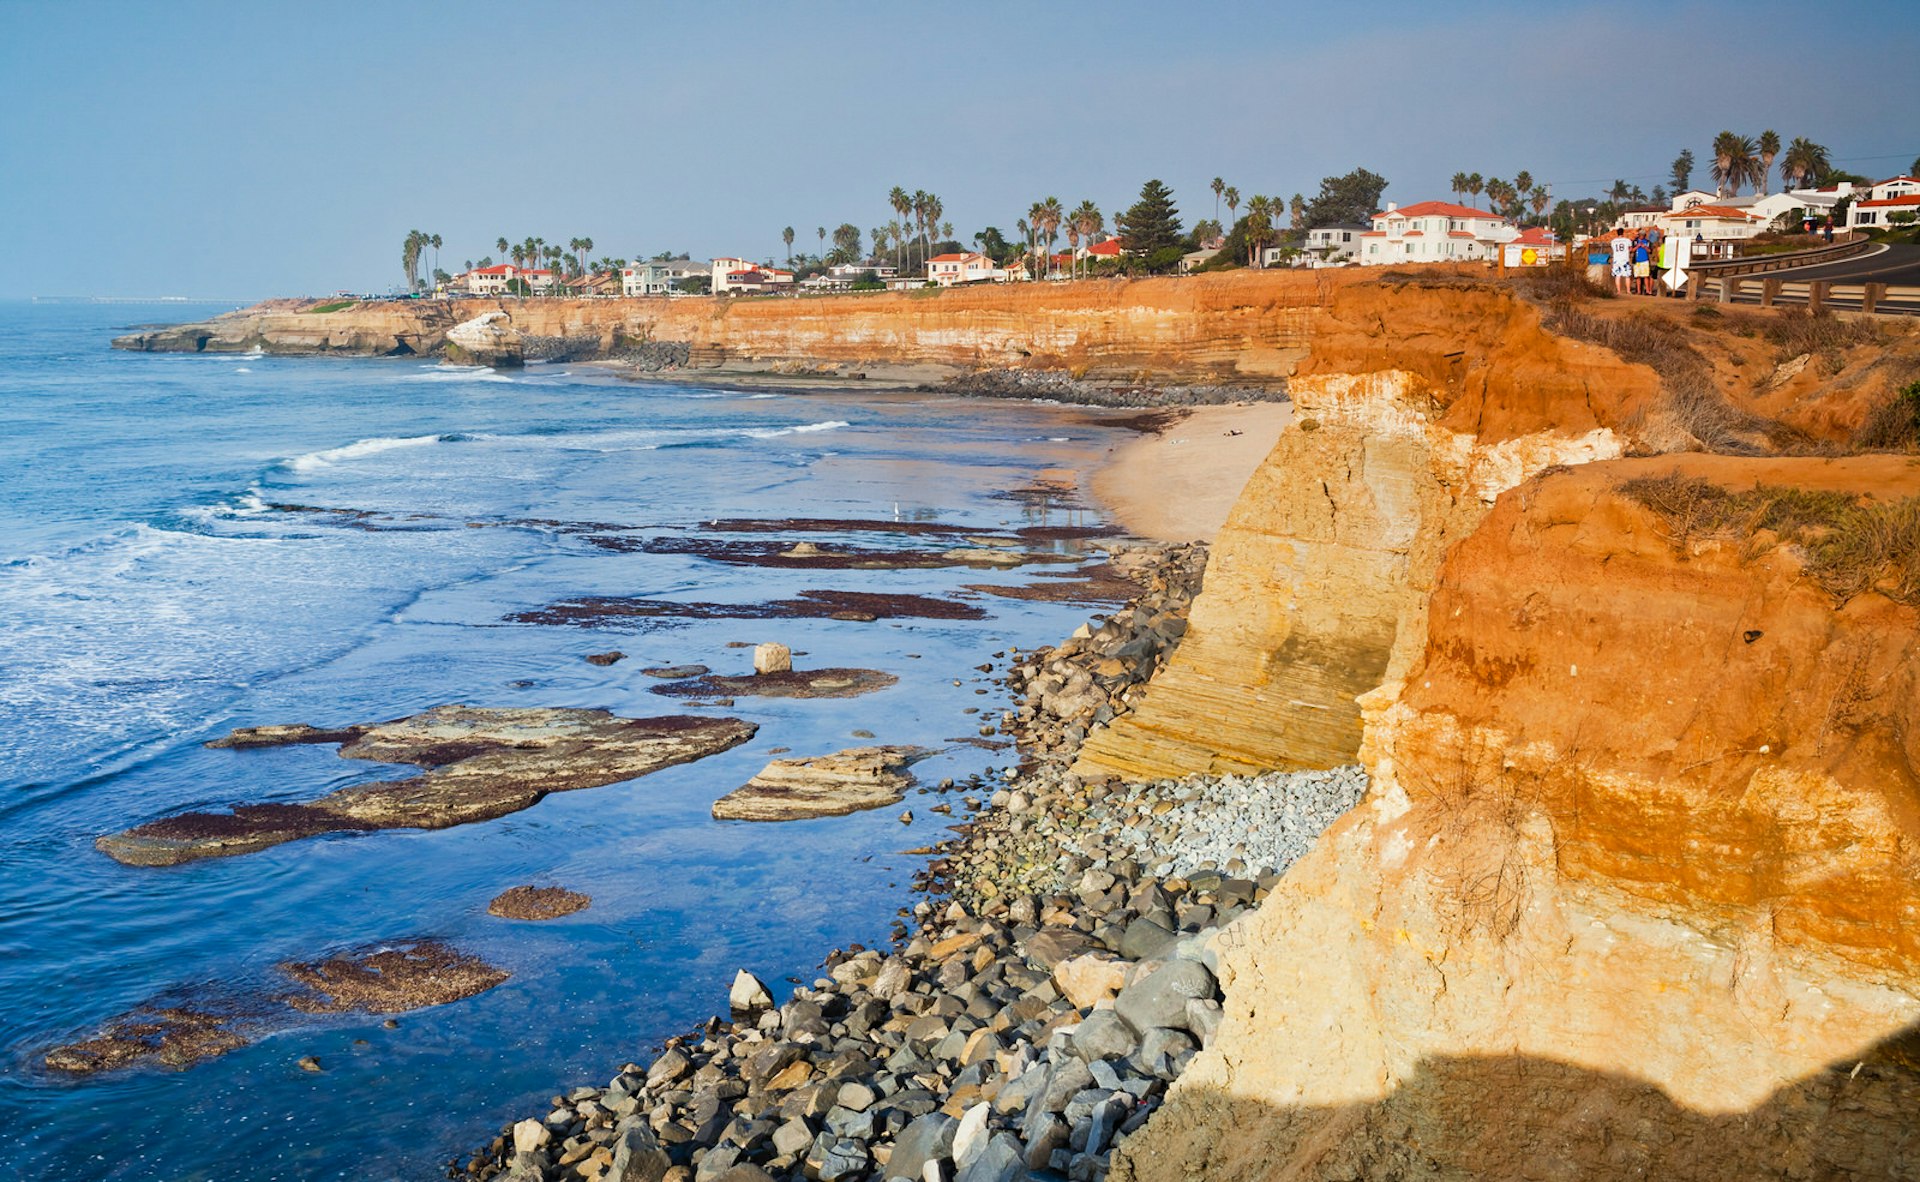 The craggy coastline of San Diego’s Sunset Cliffs © Dancestrokes / Shutterstock